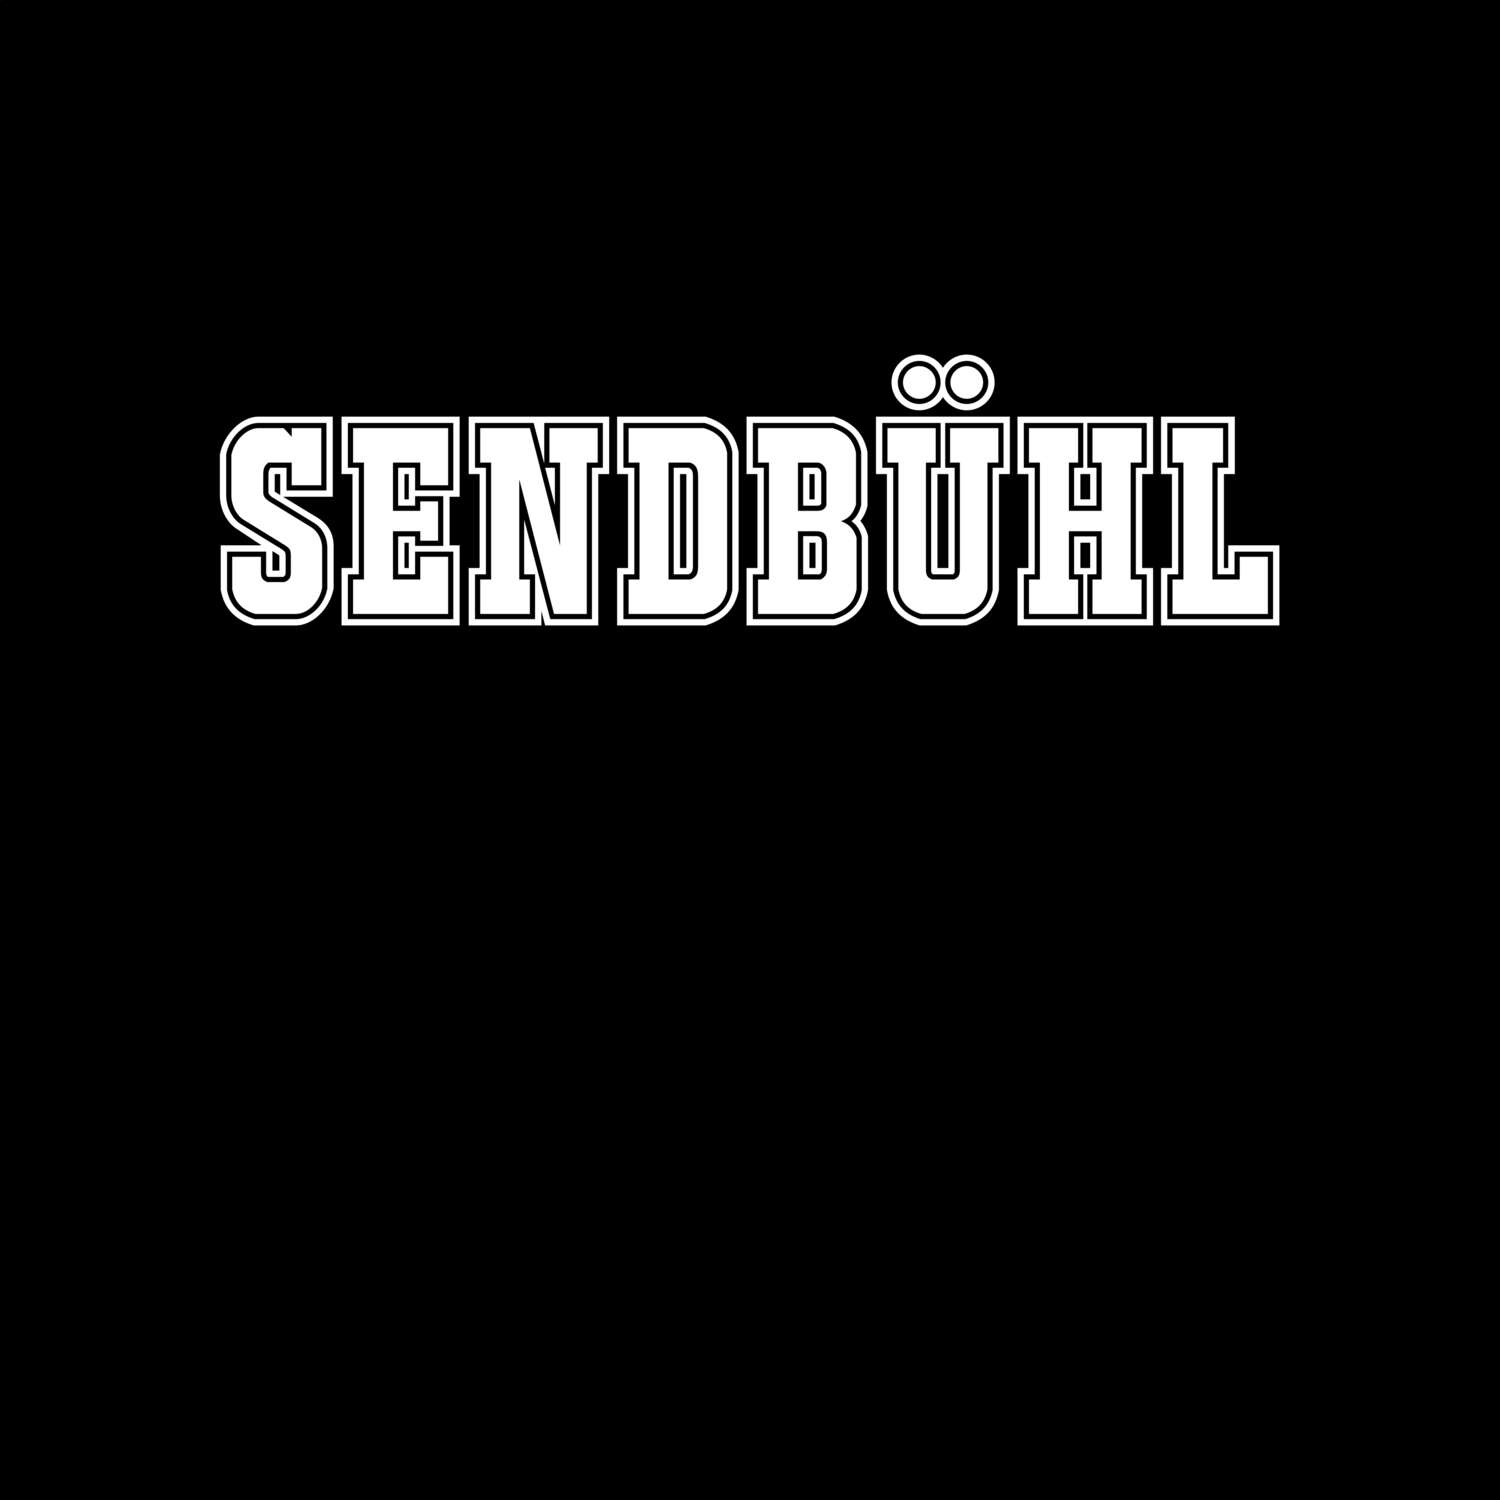 Sendbühl T-Shirt »Classic«